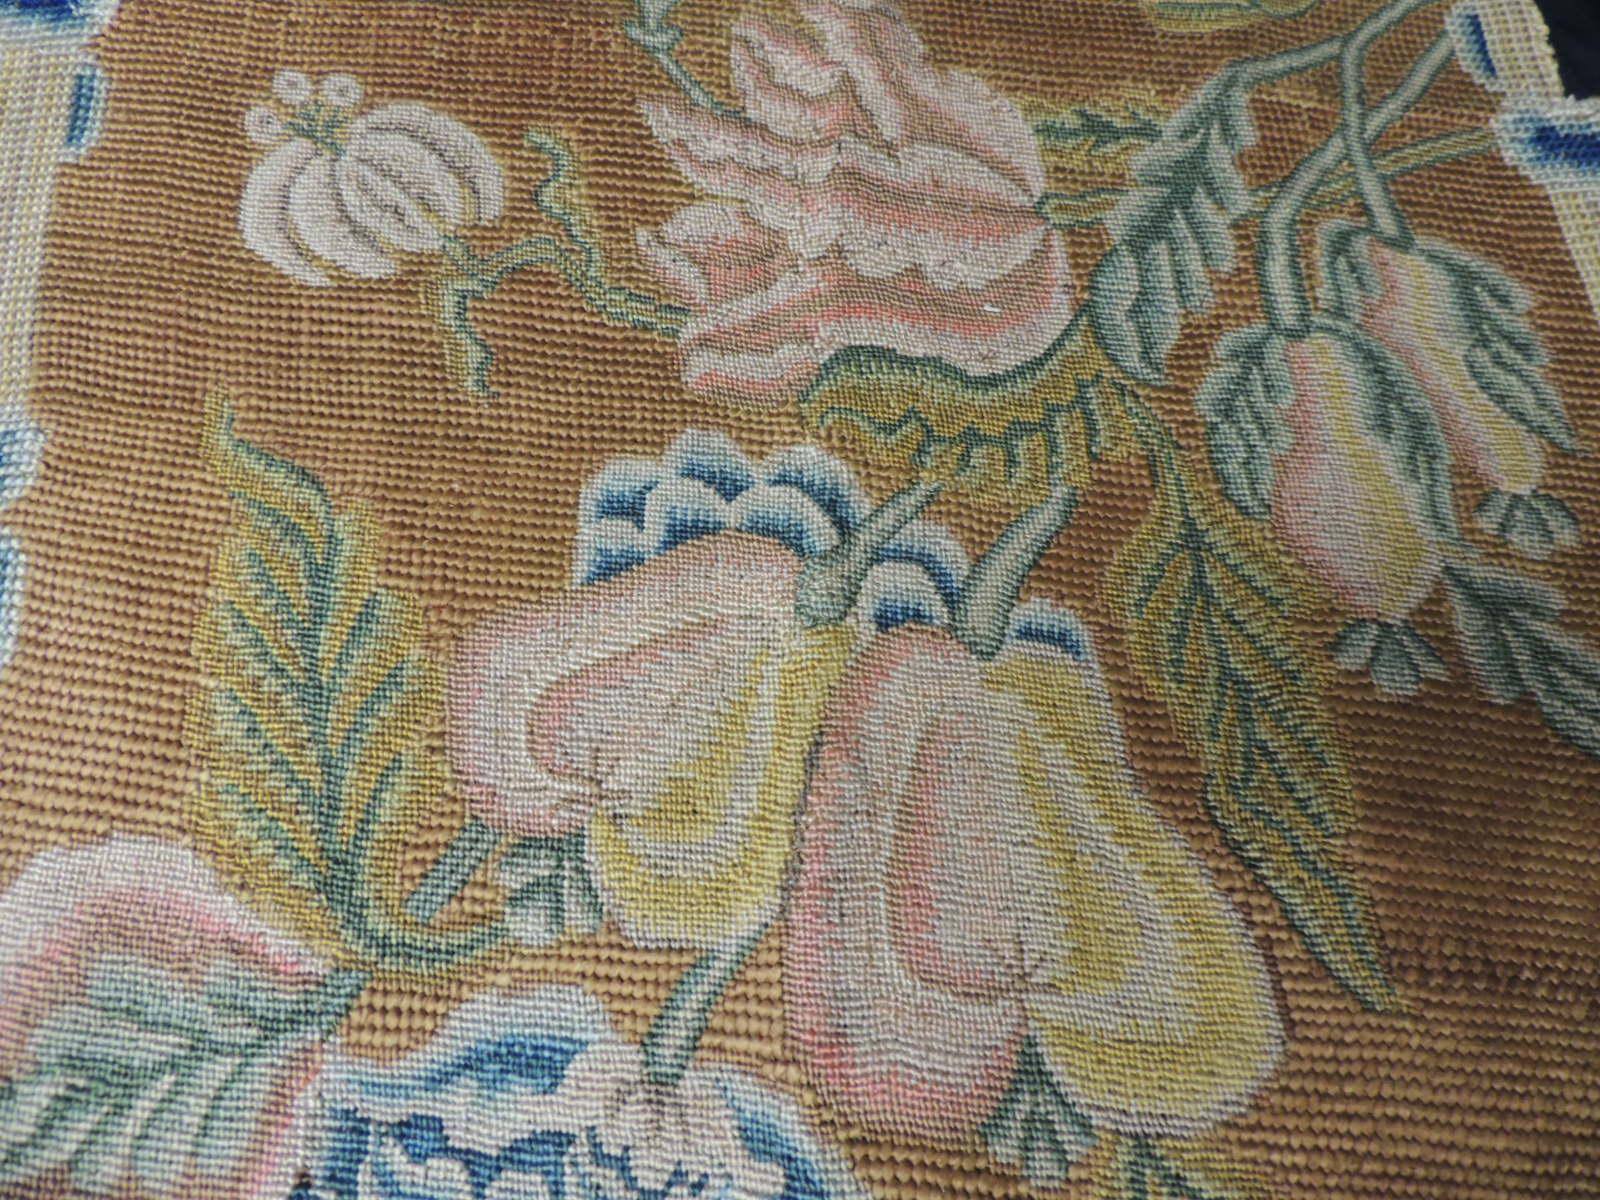 Regency Antique Floral Needlework Tapestry Fragment For Sale